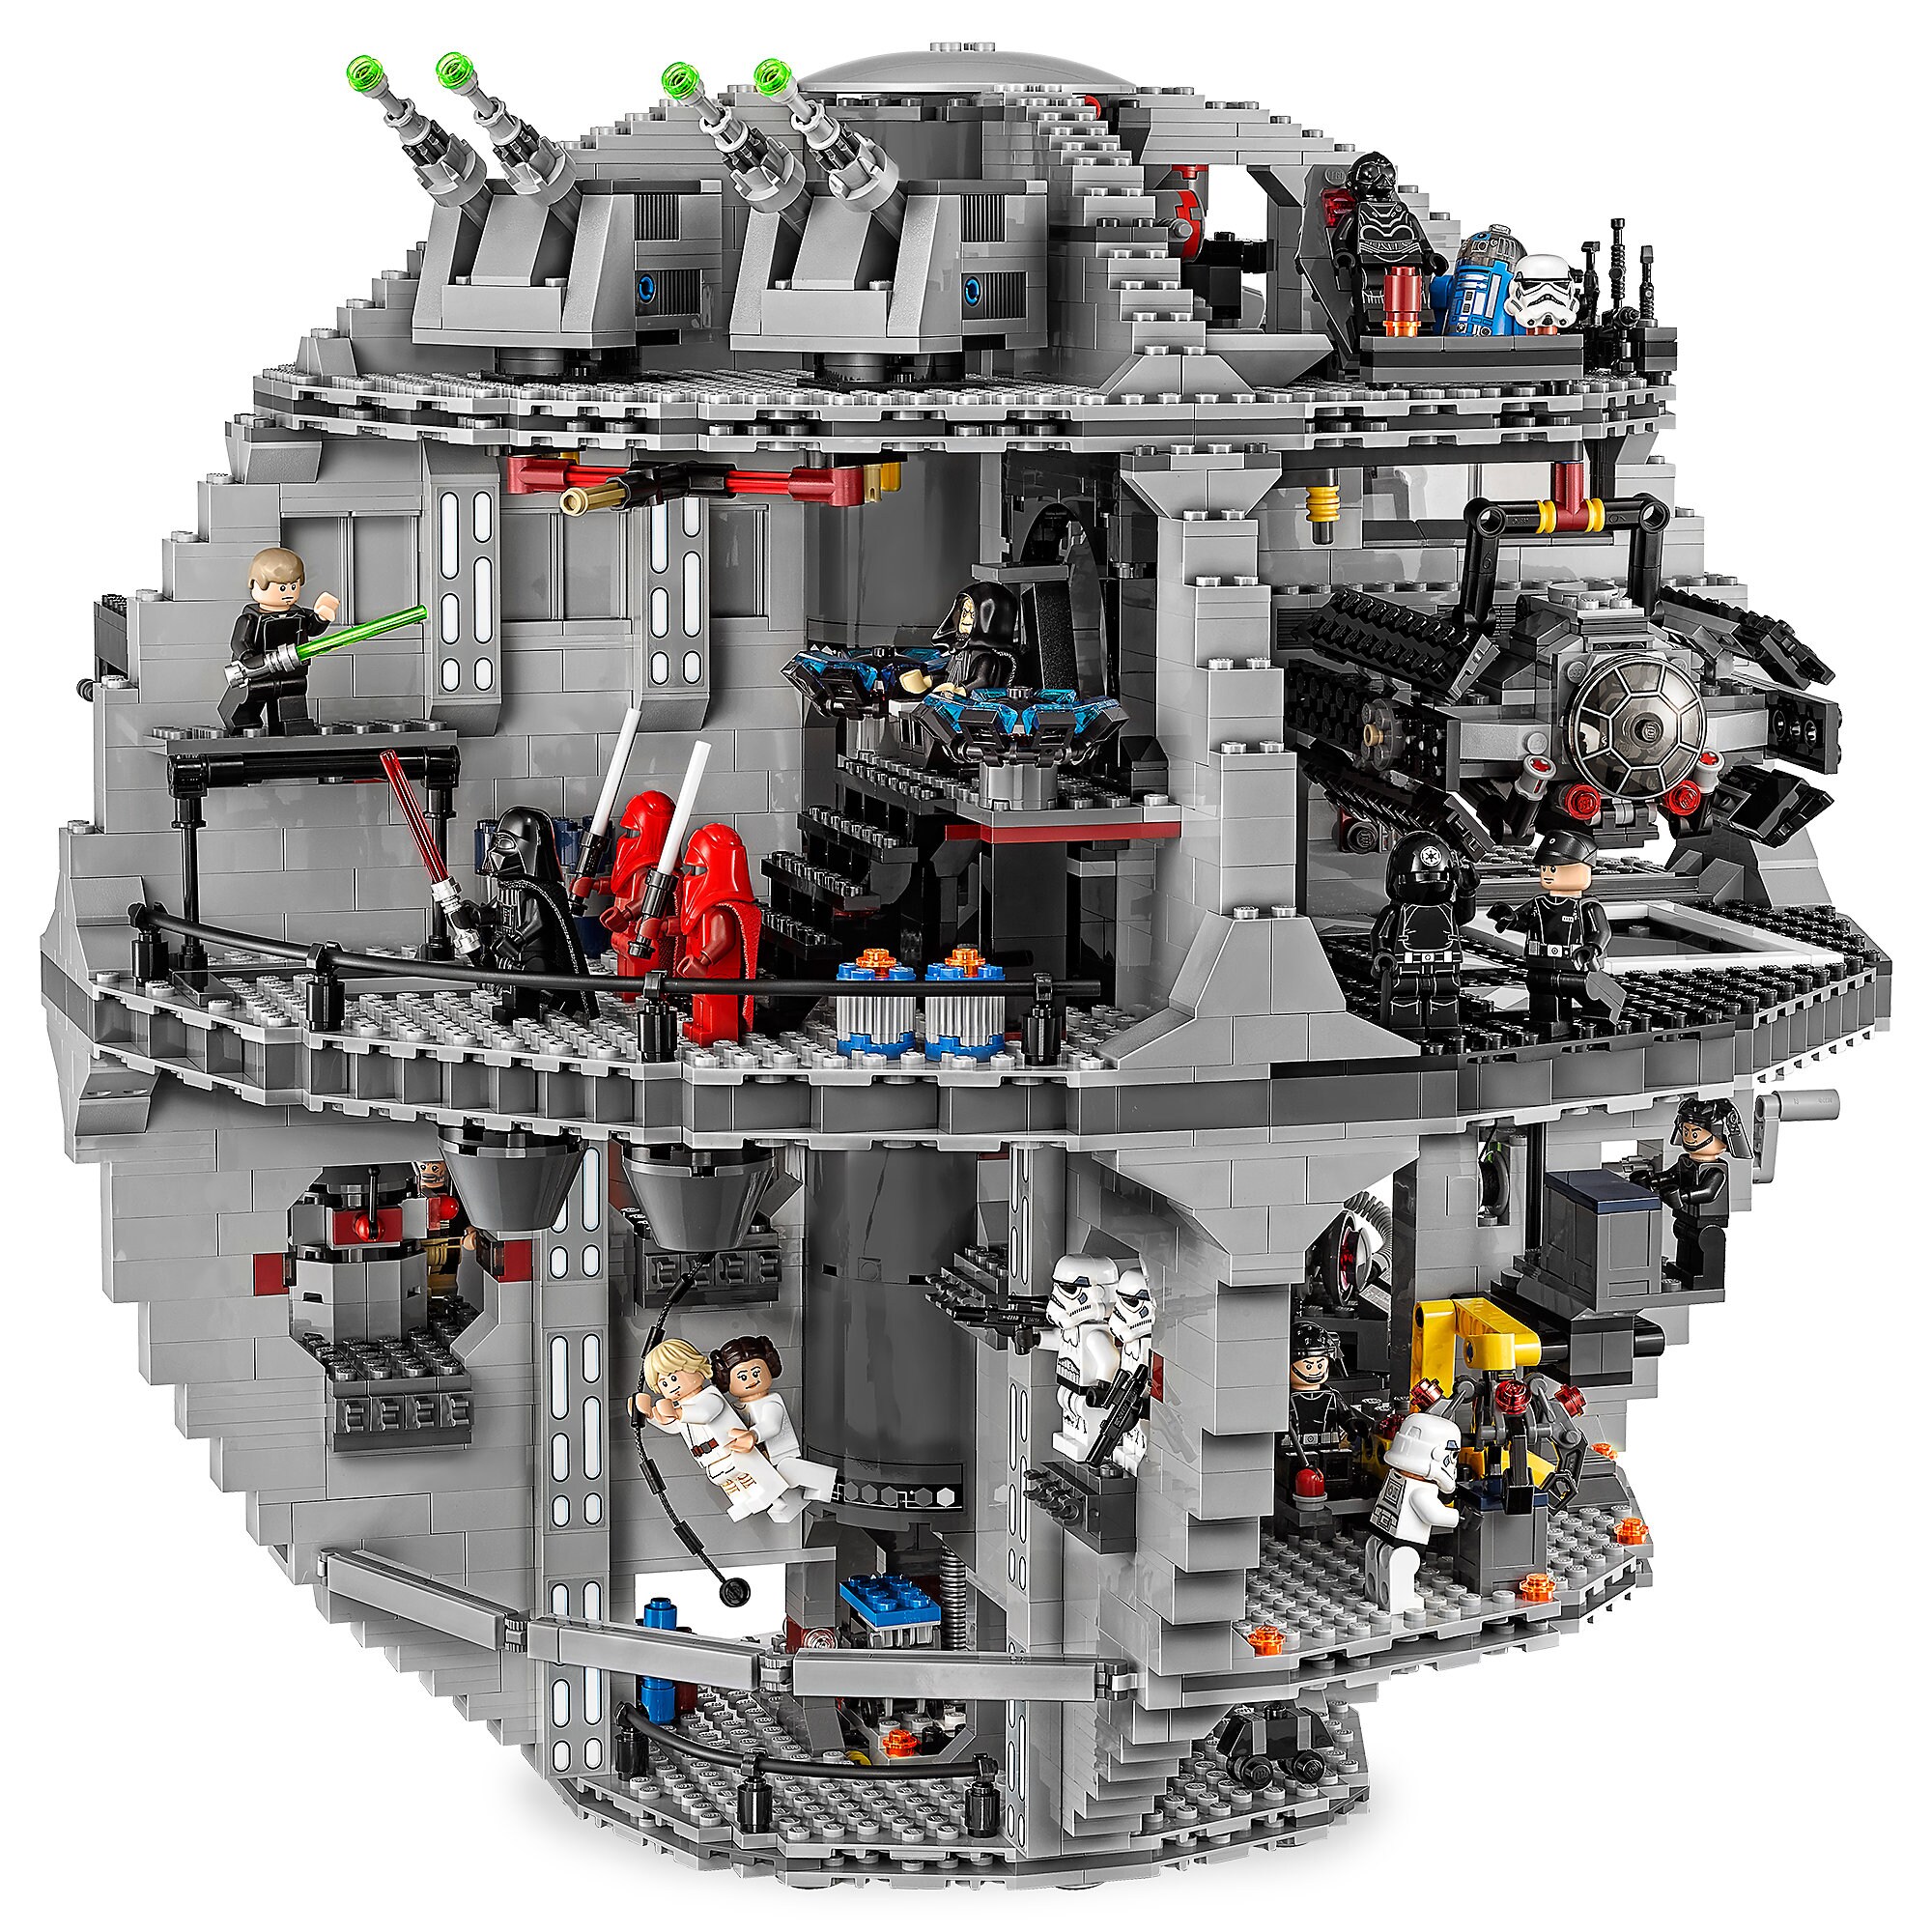 Death Star Playset by LEGO - Star Wars